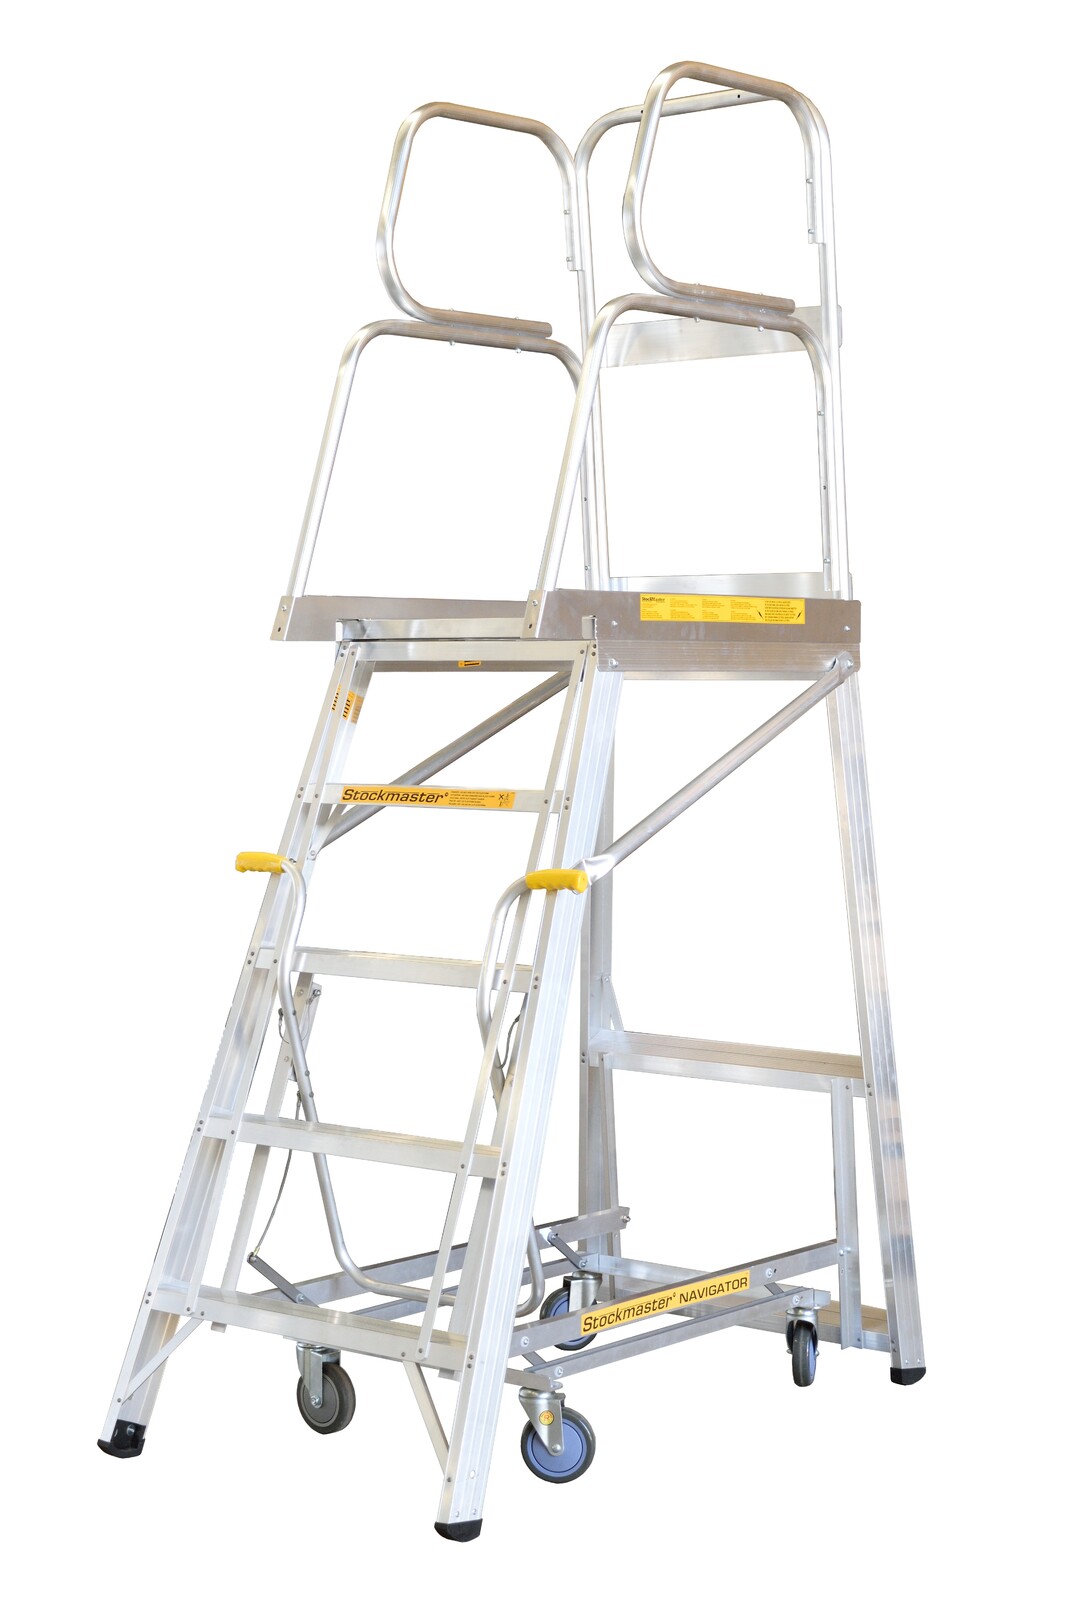 Stockmaster 150kg Rated Mobile Work Platform Ladder Navigator - 1.7m